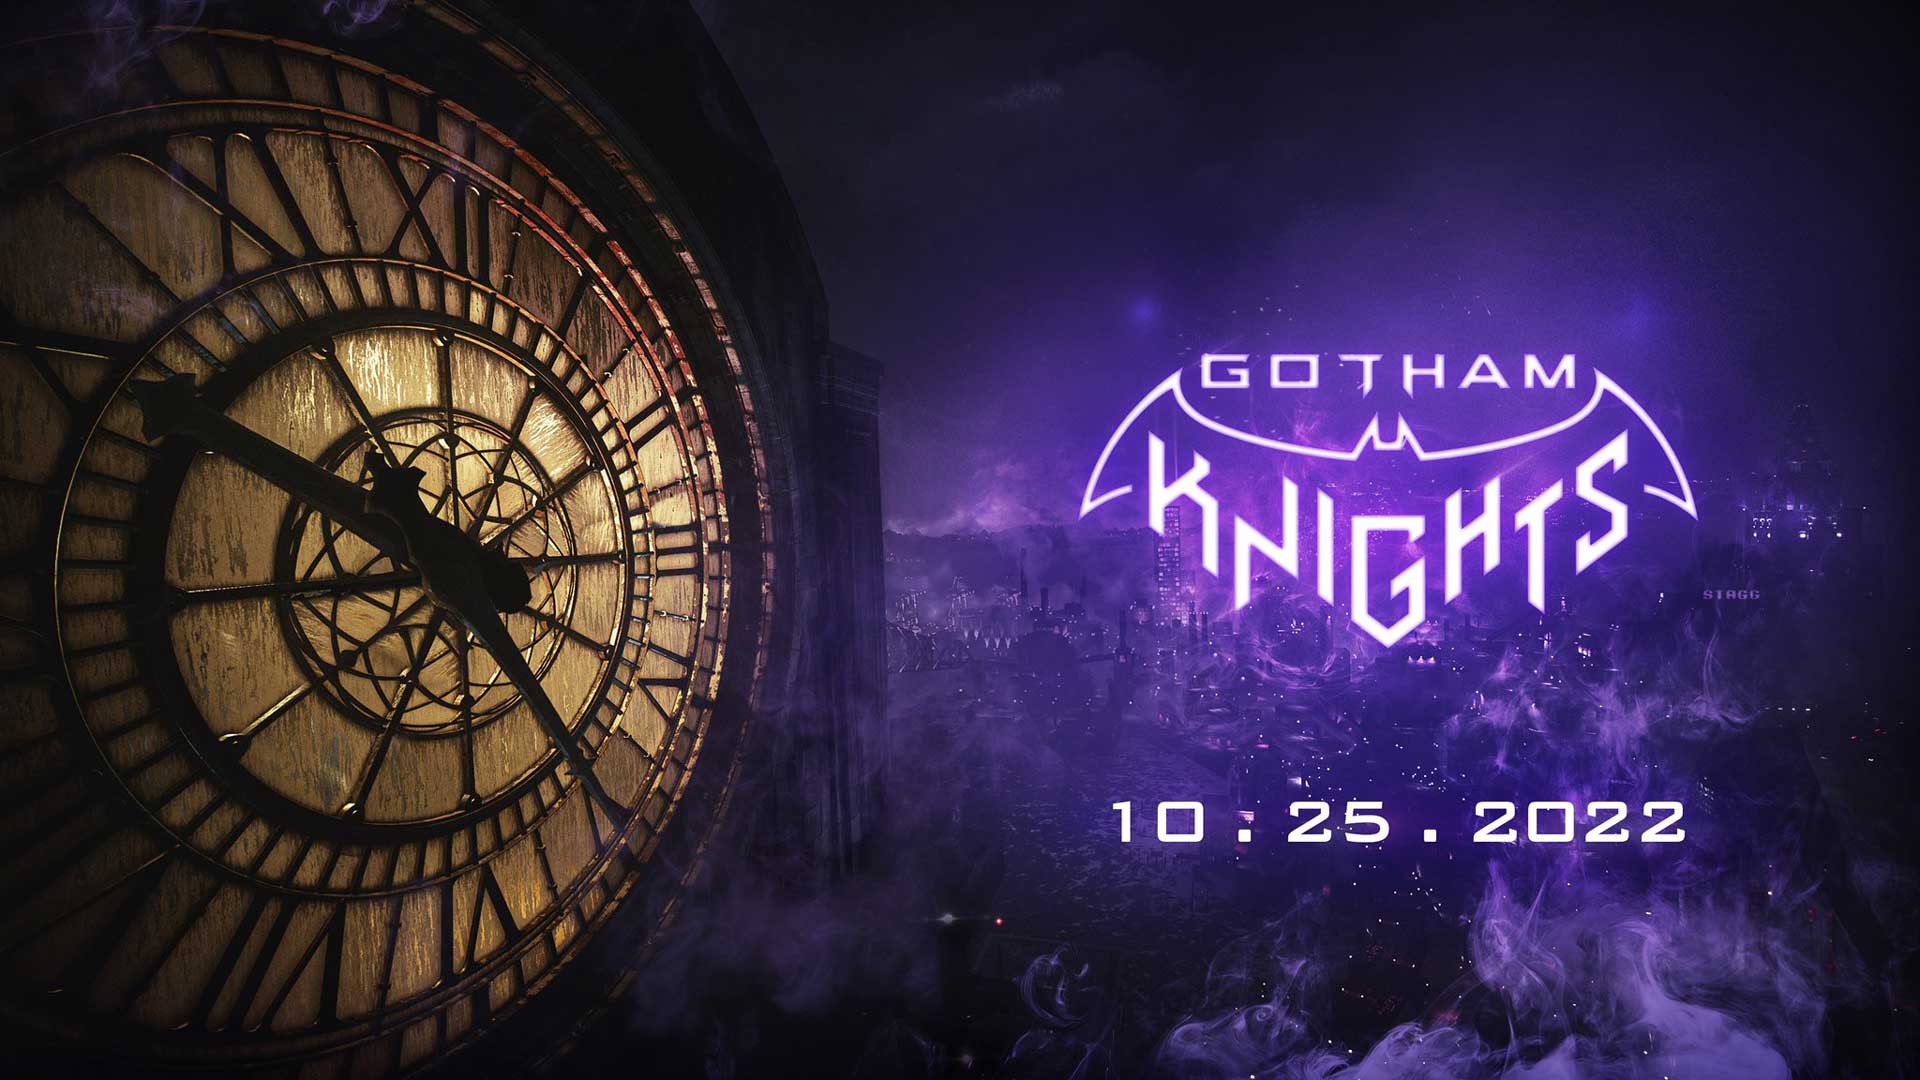 اعلام تاریخ عرضه رسمی بازی Gotham Knights (گاتهام نایتز) شرکت برادران وارنر